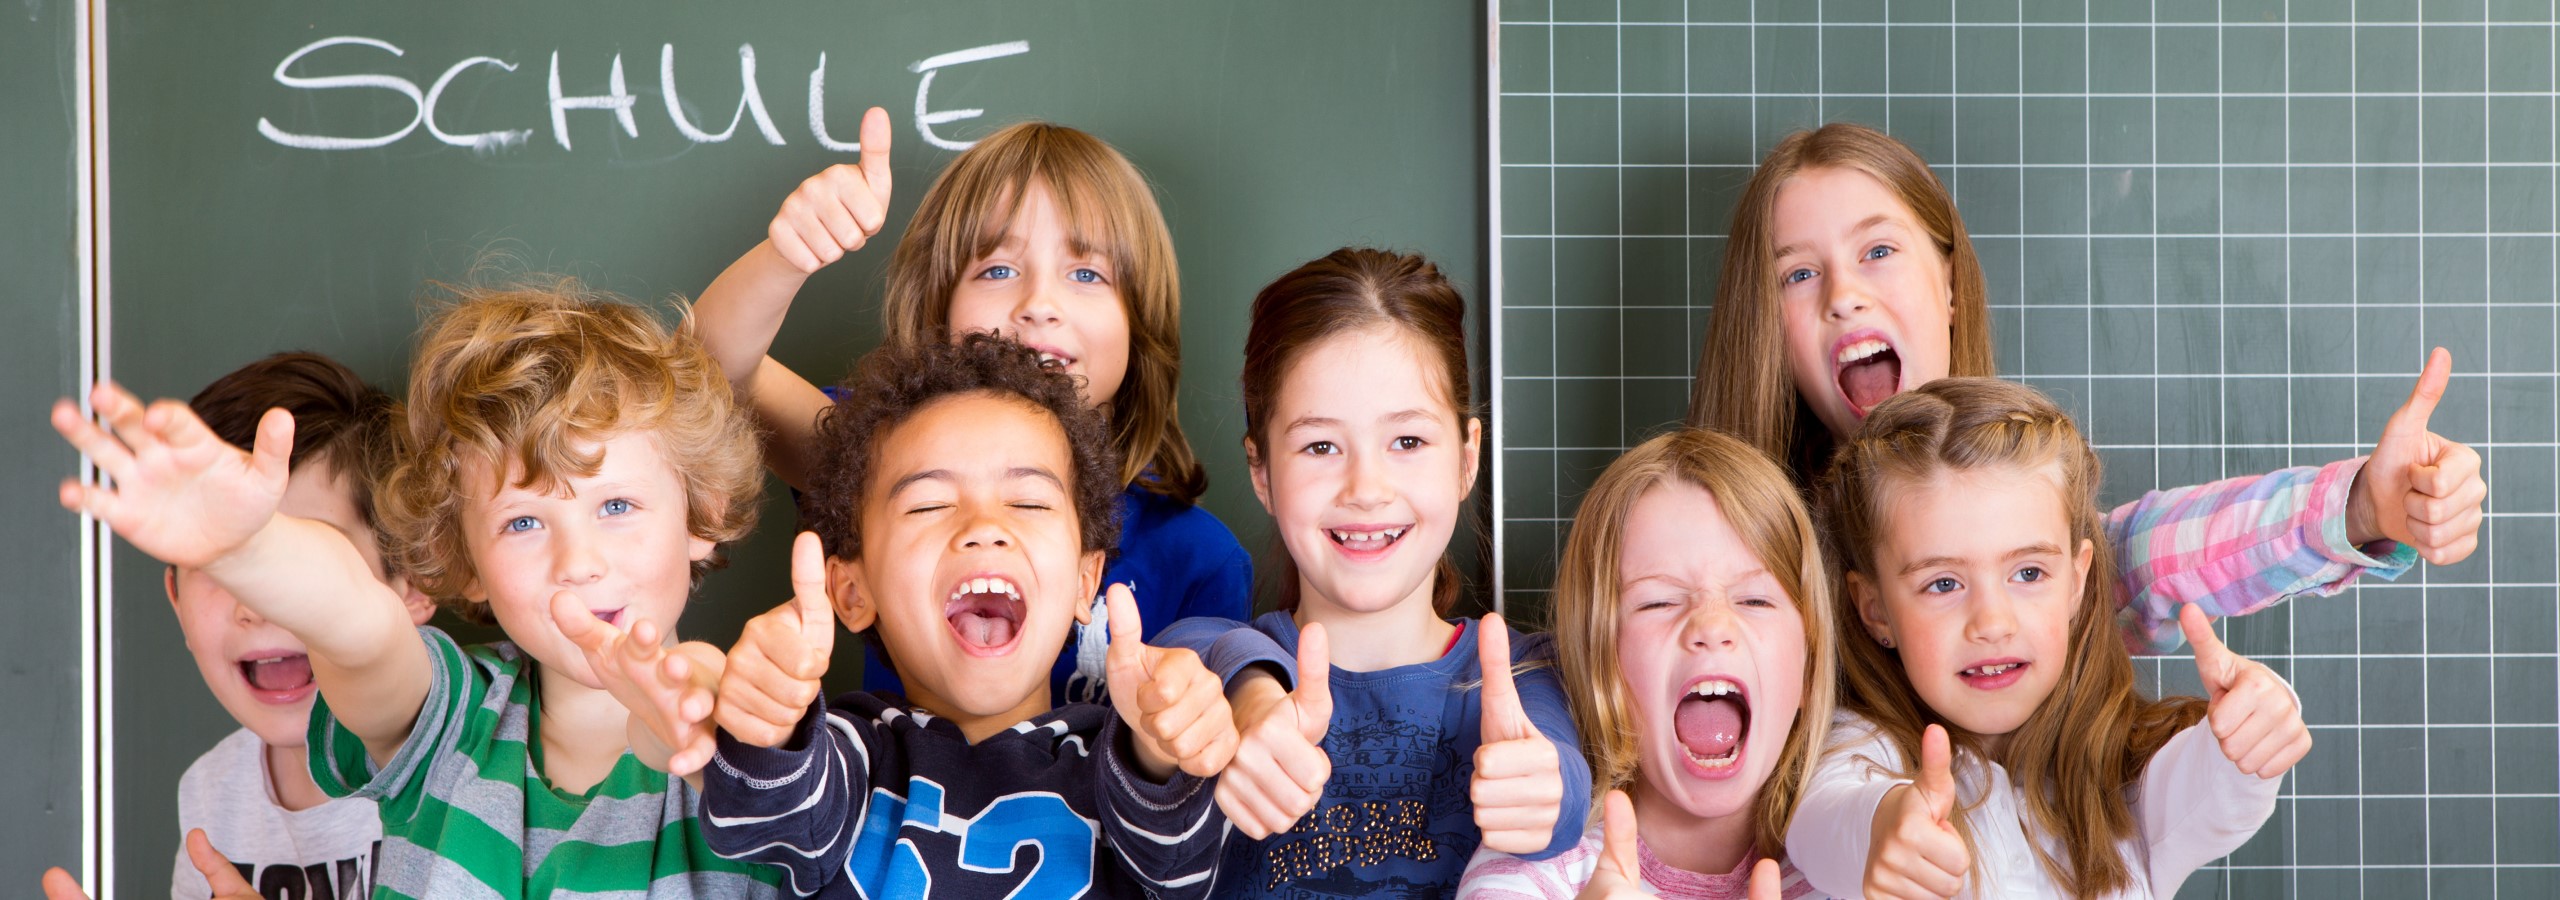 Schule - Panoramaschnitt: Jubelnde Mädchen und Jungen zeigen Daumen hoch vor einer Schultafel